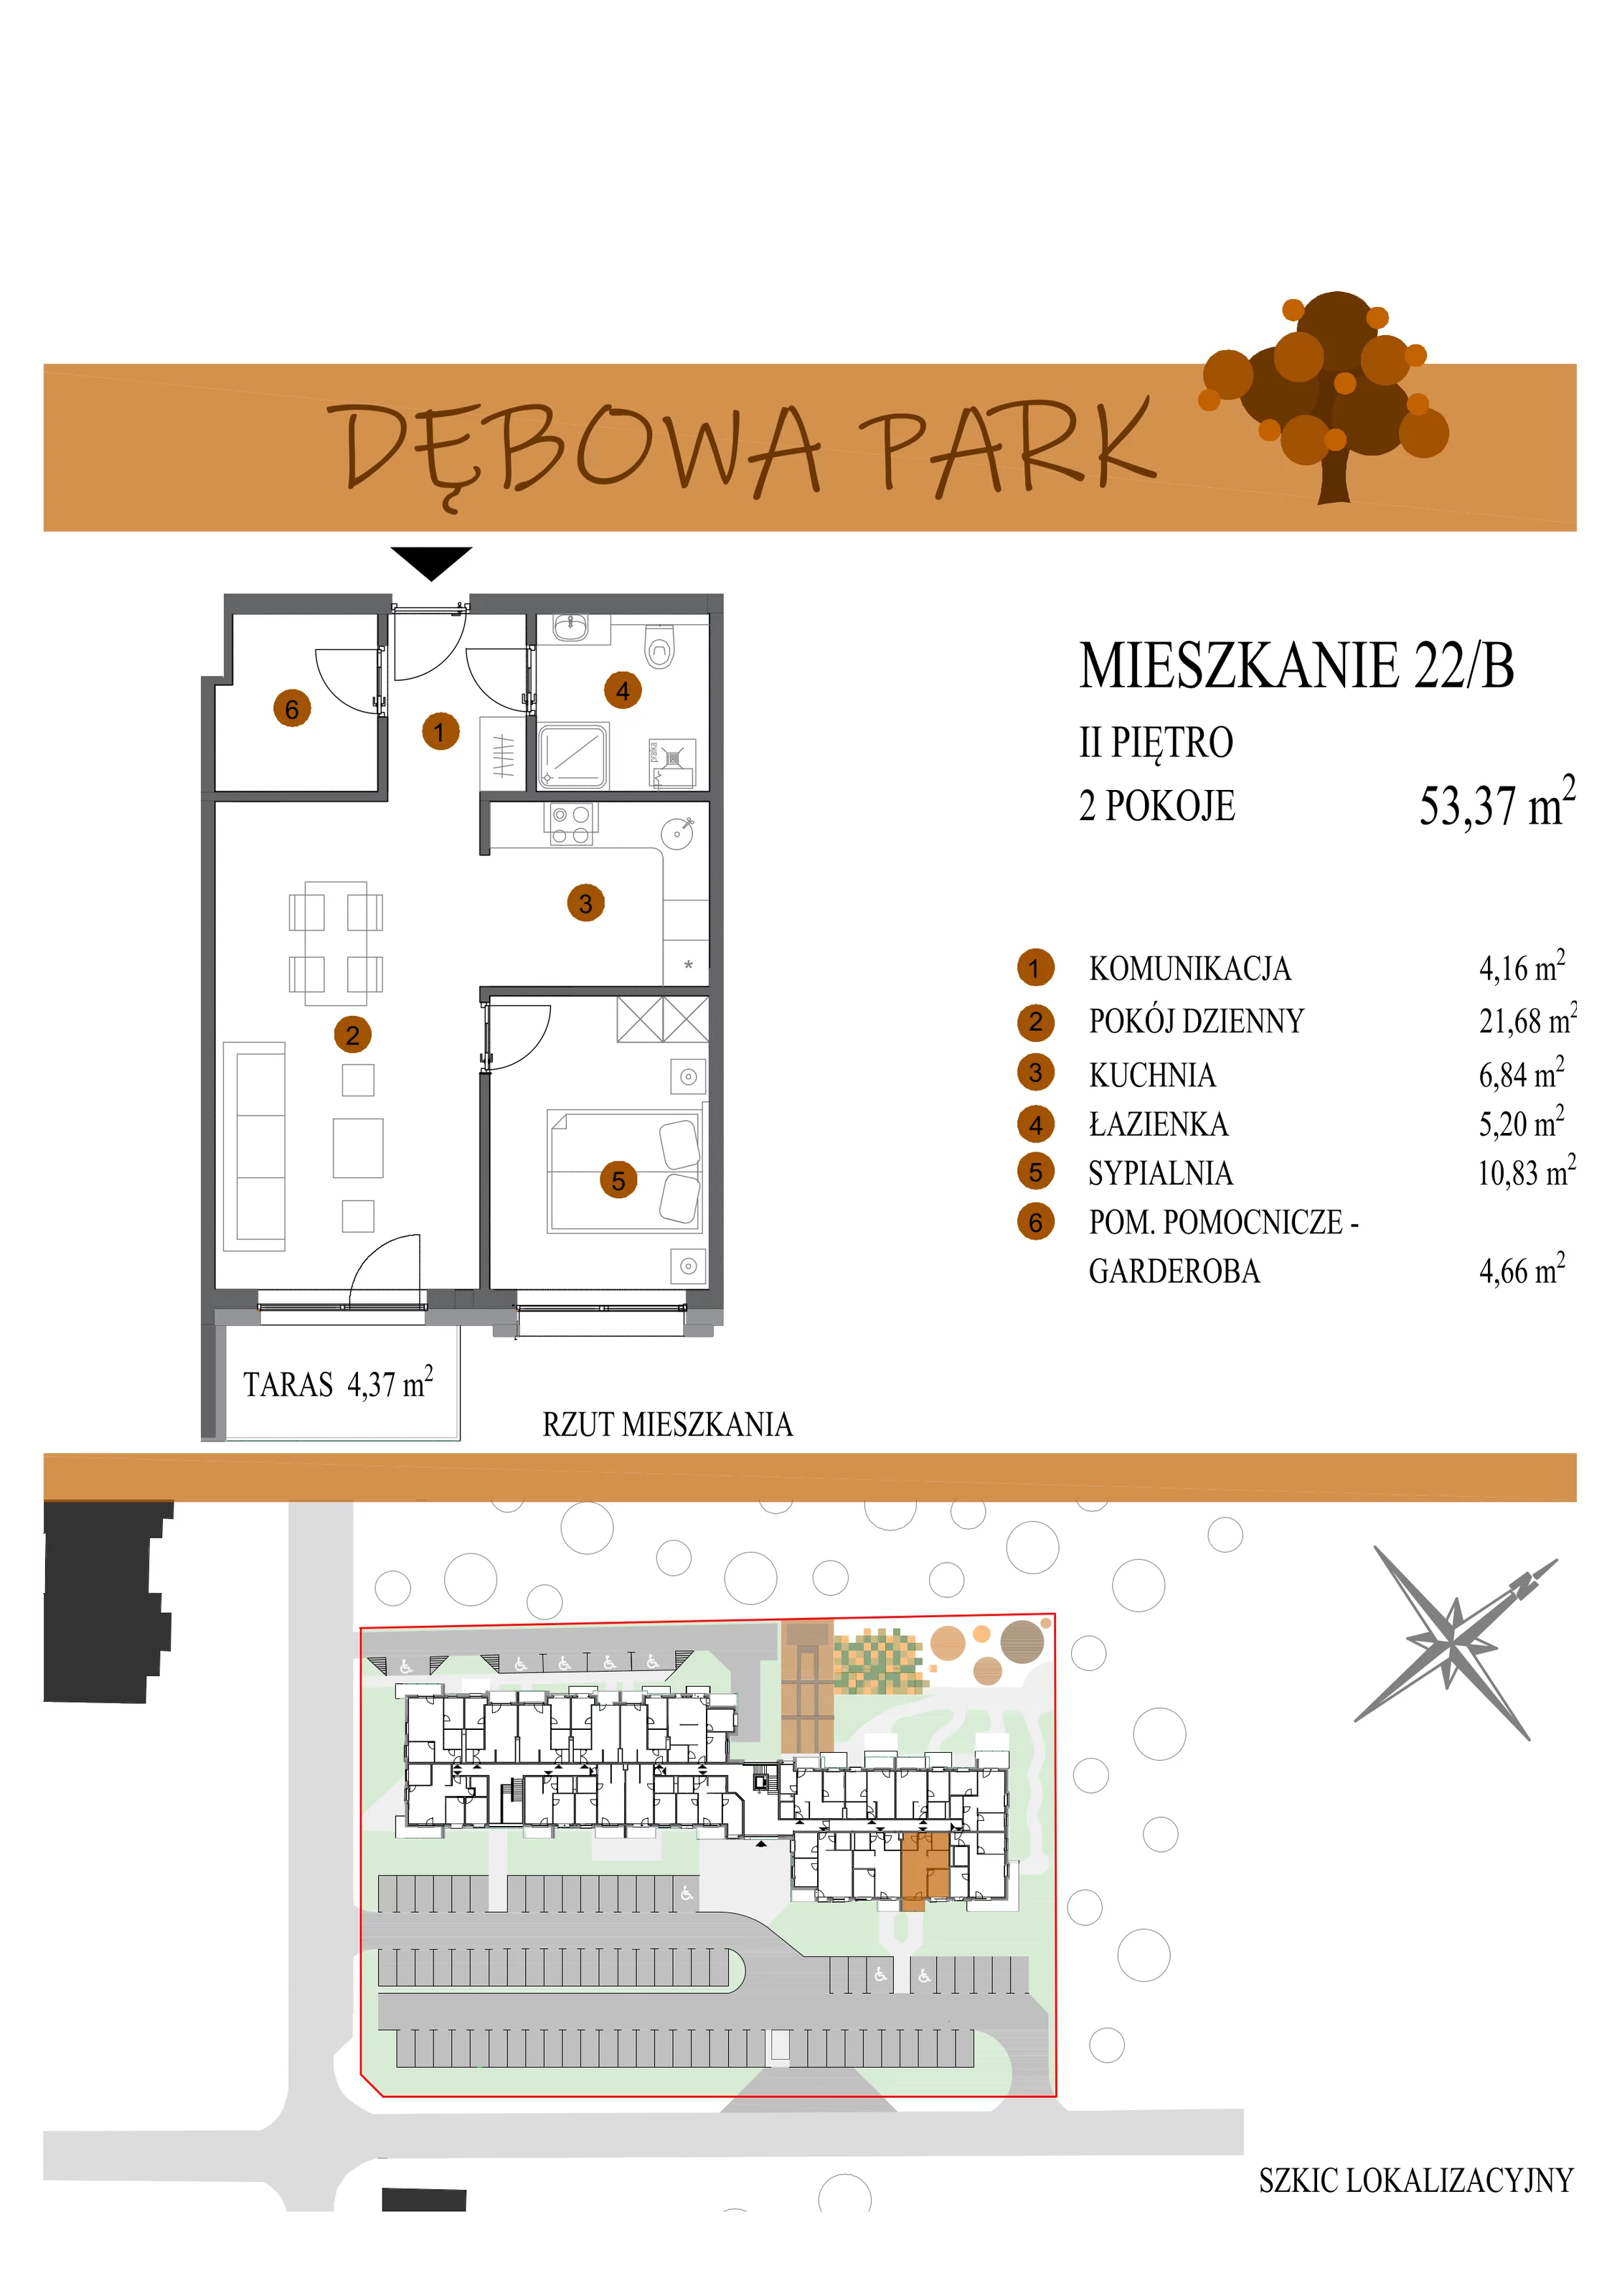 Mieszkanie 53,37 m², piętro 2, oferta nr 22B, Dębowa Park, Gogolin, ul. Dębowa